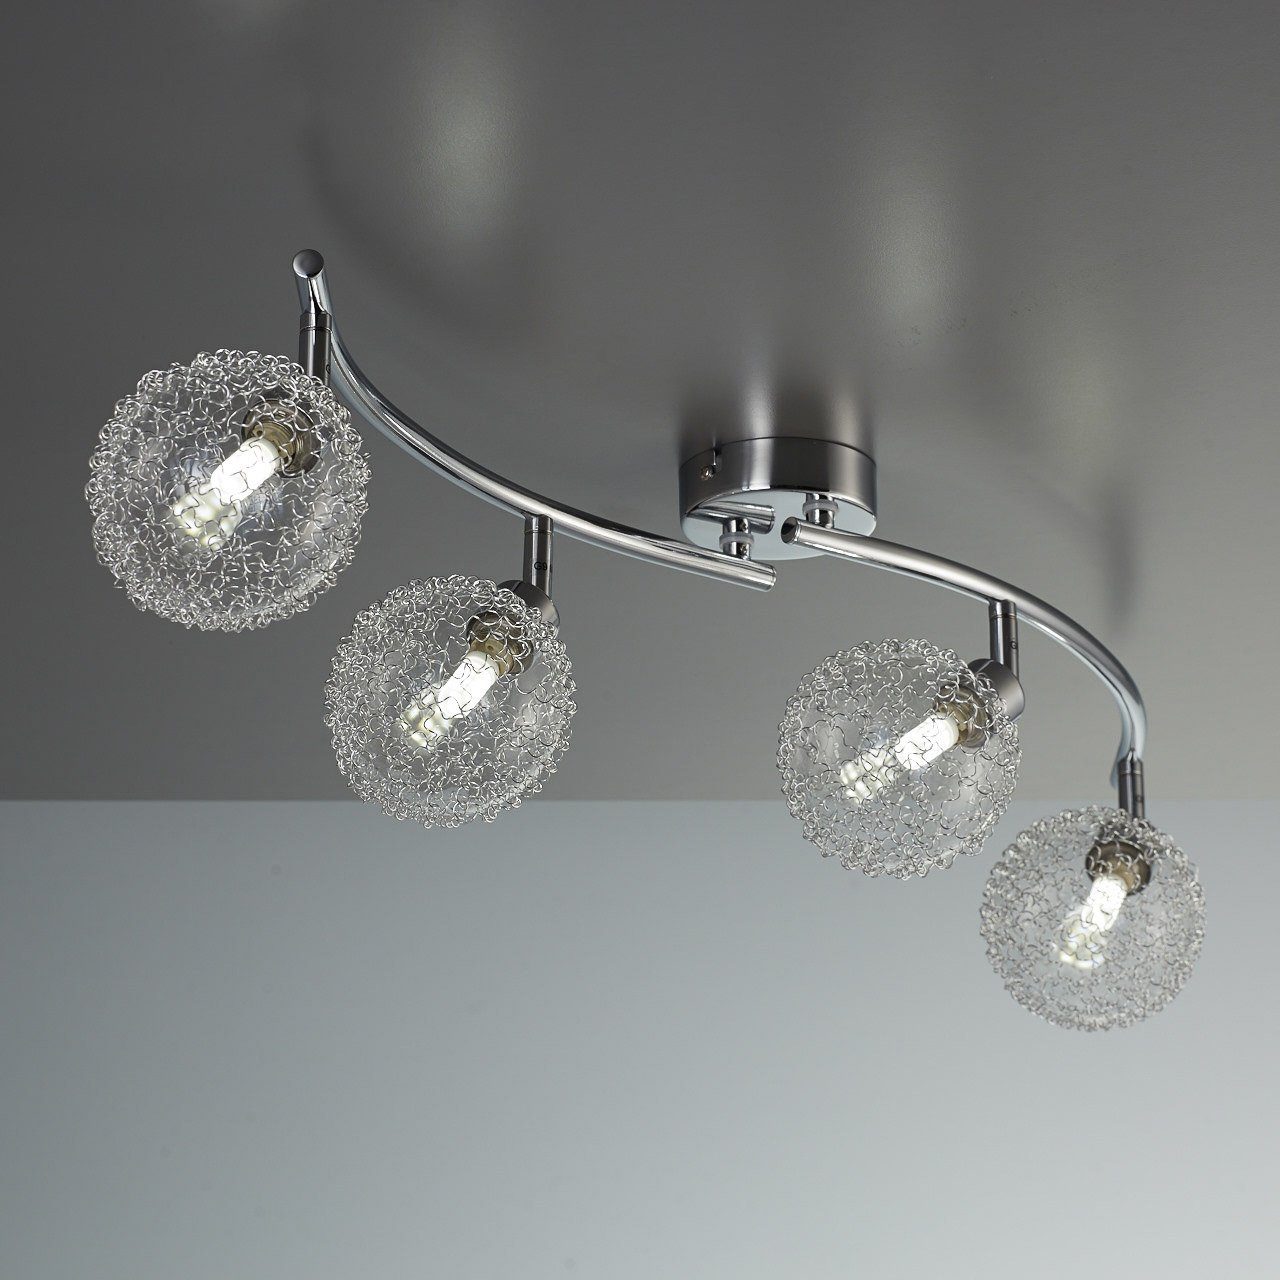 Design LED Deckenleuchte Chrom Deckenstrahler Leuchte Deckenspot Deckenlampe NEU 